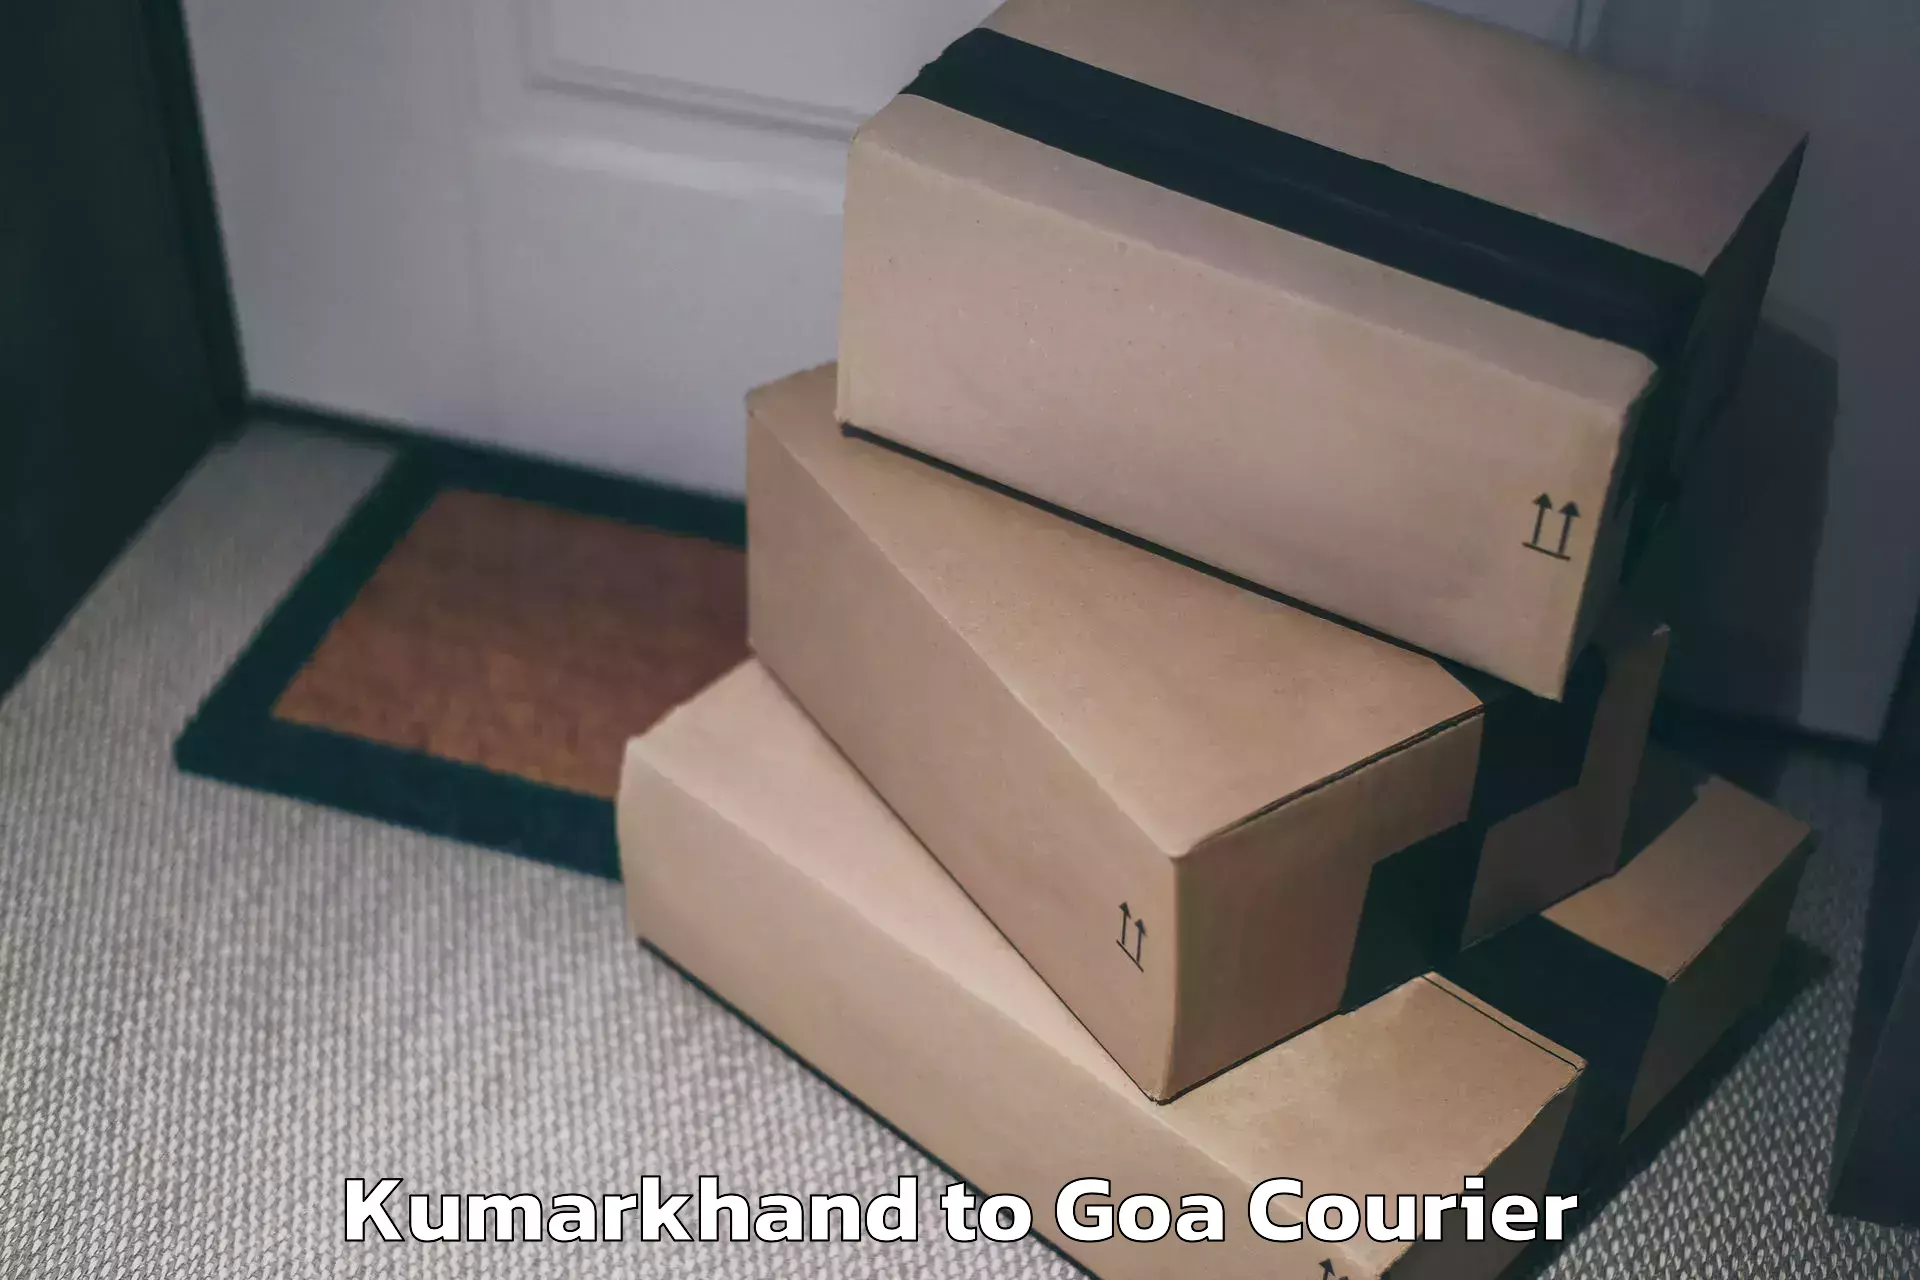 Luggage forwarding service Kumarkhand to Goa